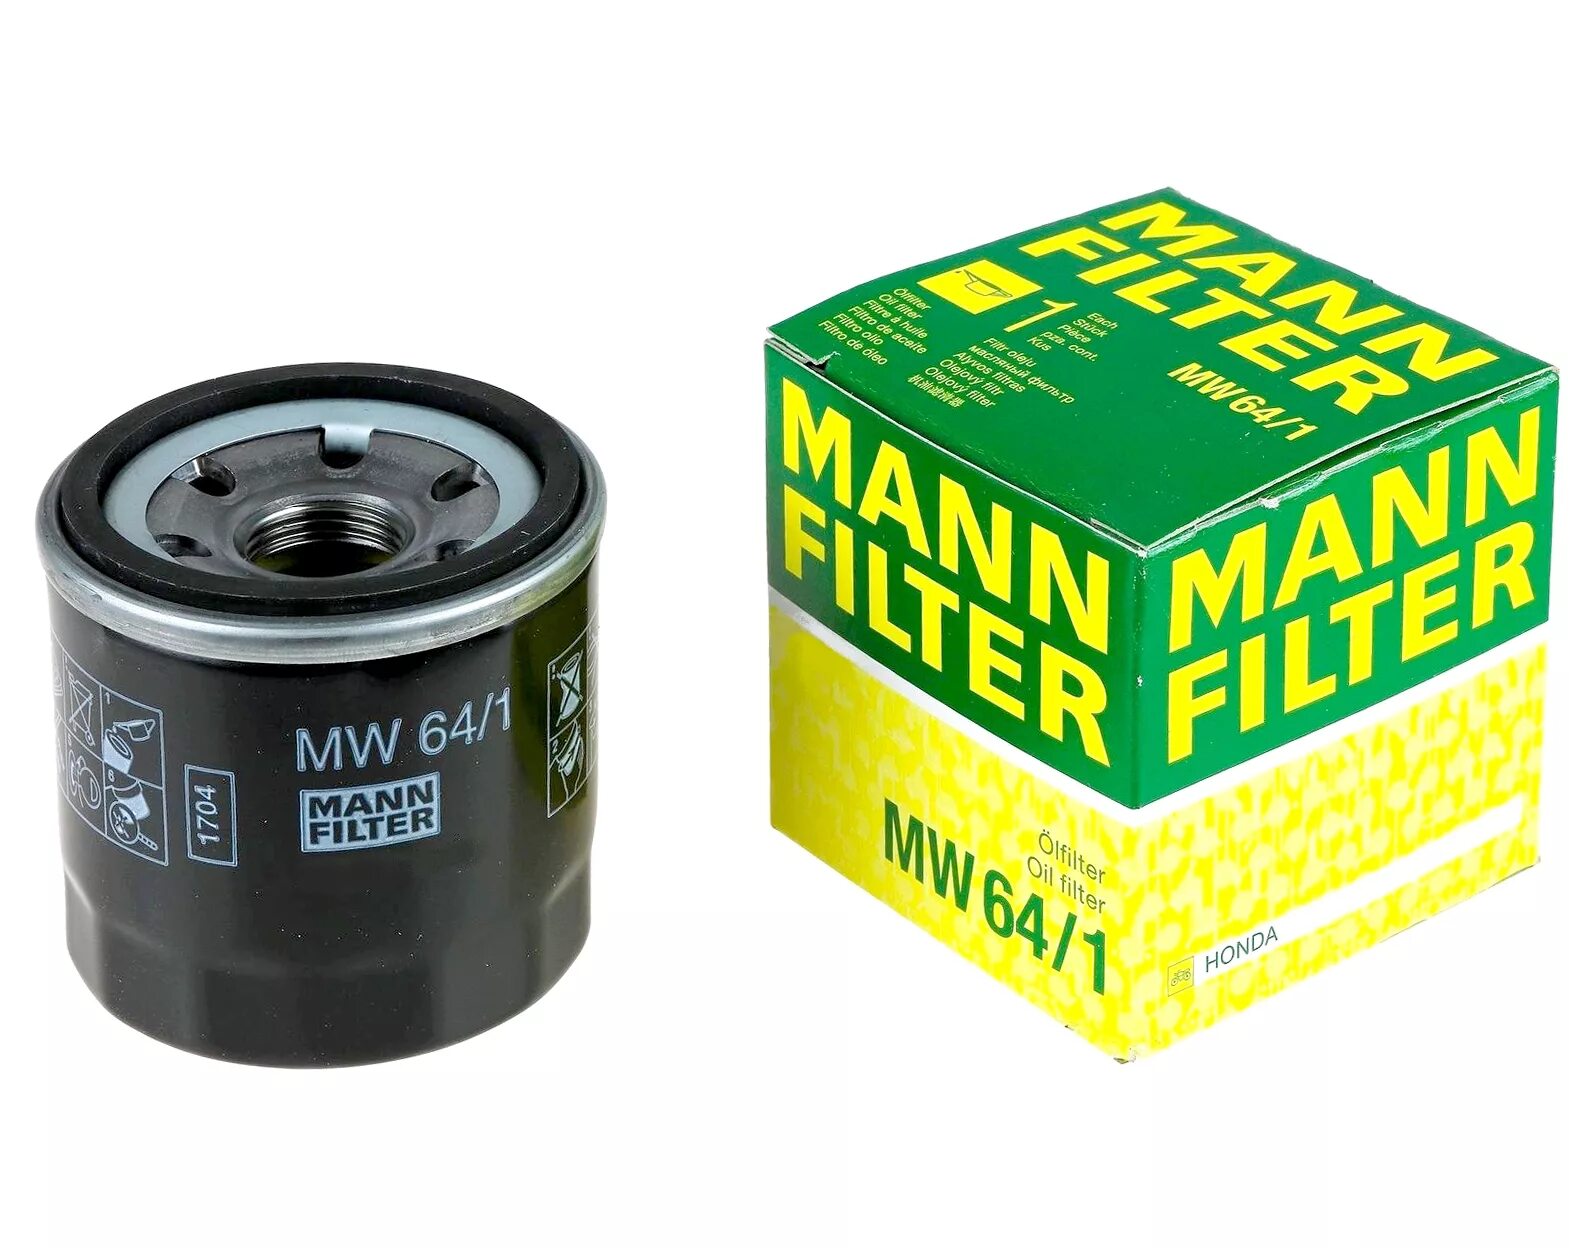 Фильтр масляный бензин. Фильтр масляный Mann mw64. Масляный фильтр Mannol mw64. Mann-Filter MW 64/1 фильтр масляный для мотоциклов. Фильтр Манн 64/1 на Хонда.